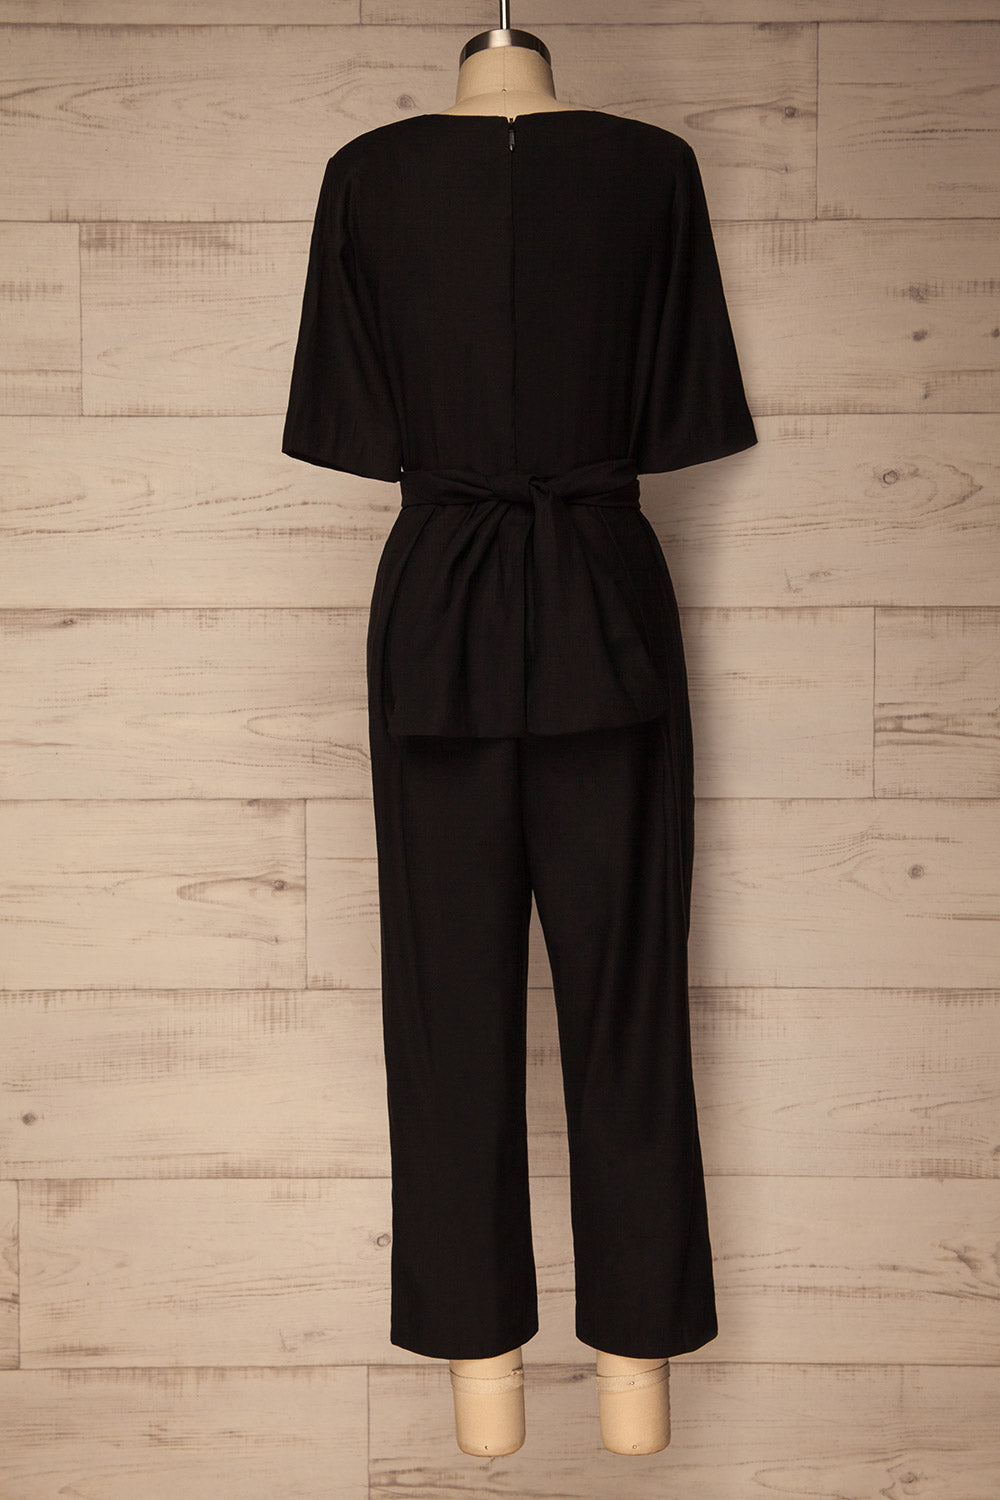 Yolet Black Pleated Jumpsuit with Tied Waist | La Petite Garçonne